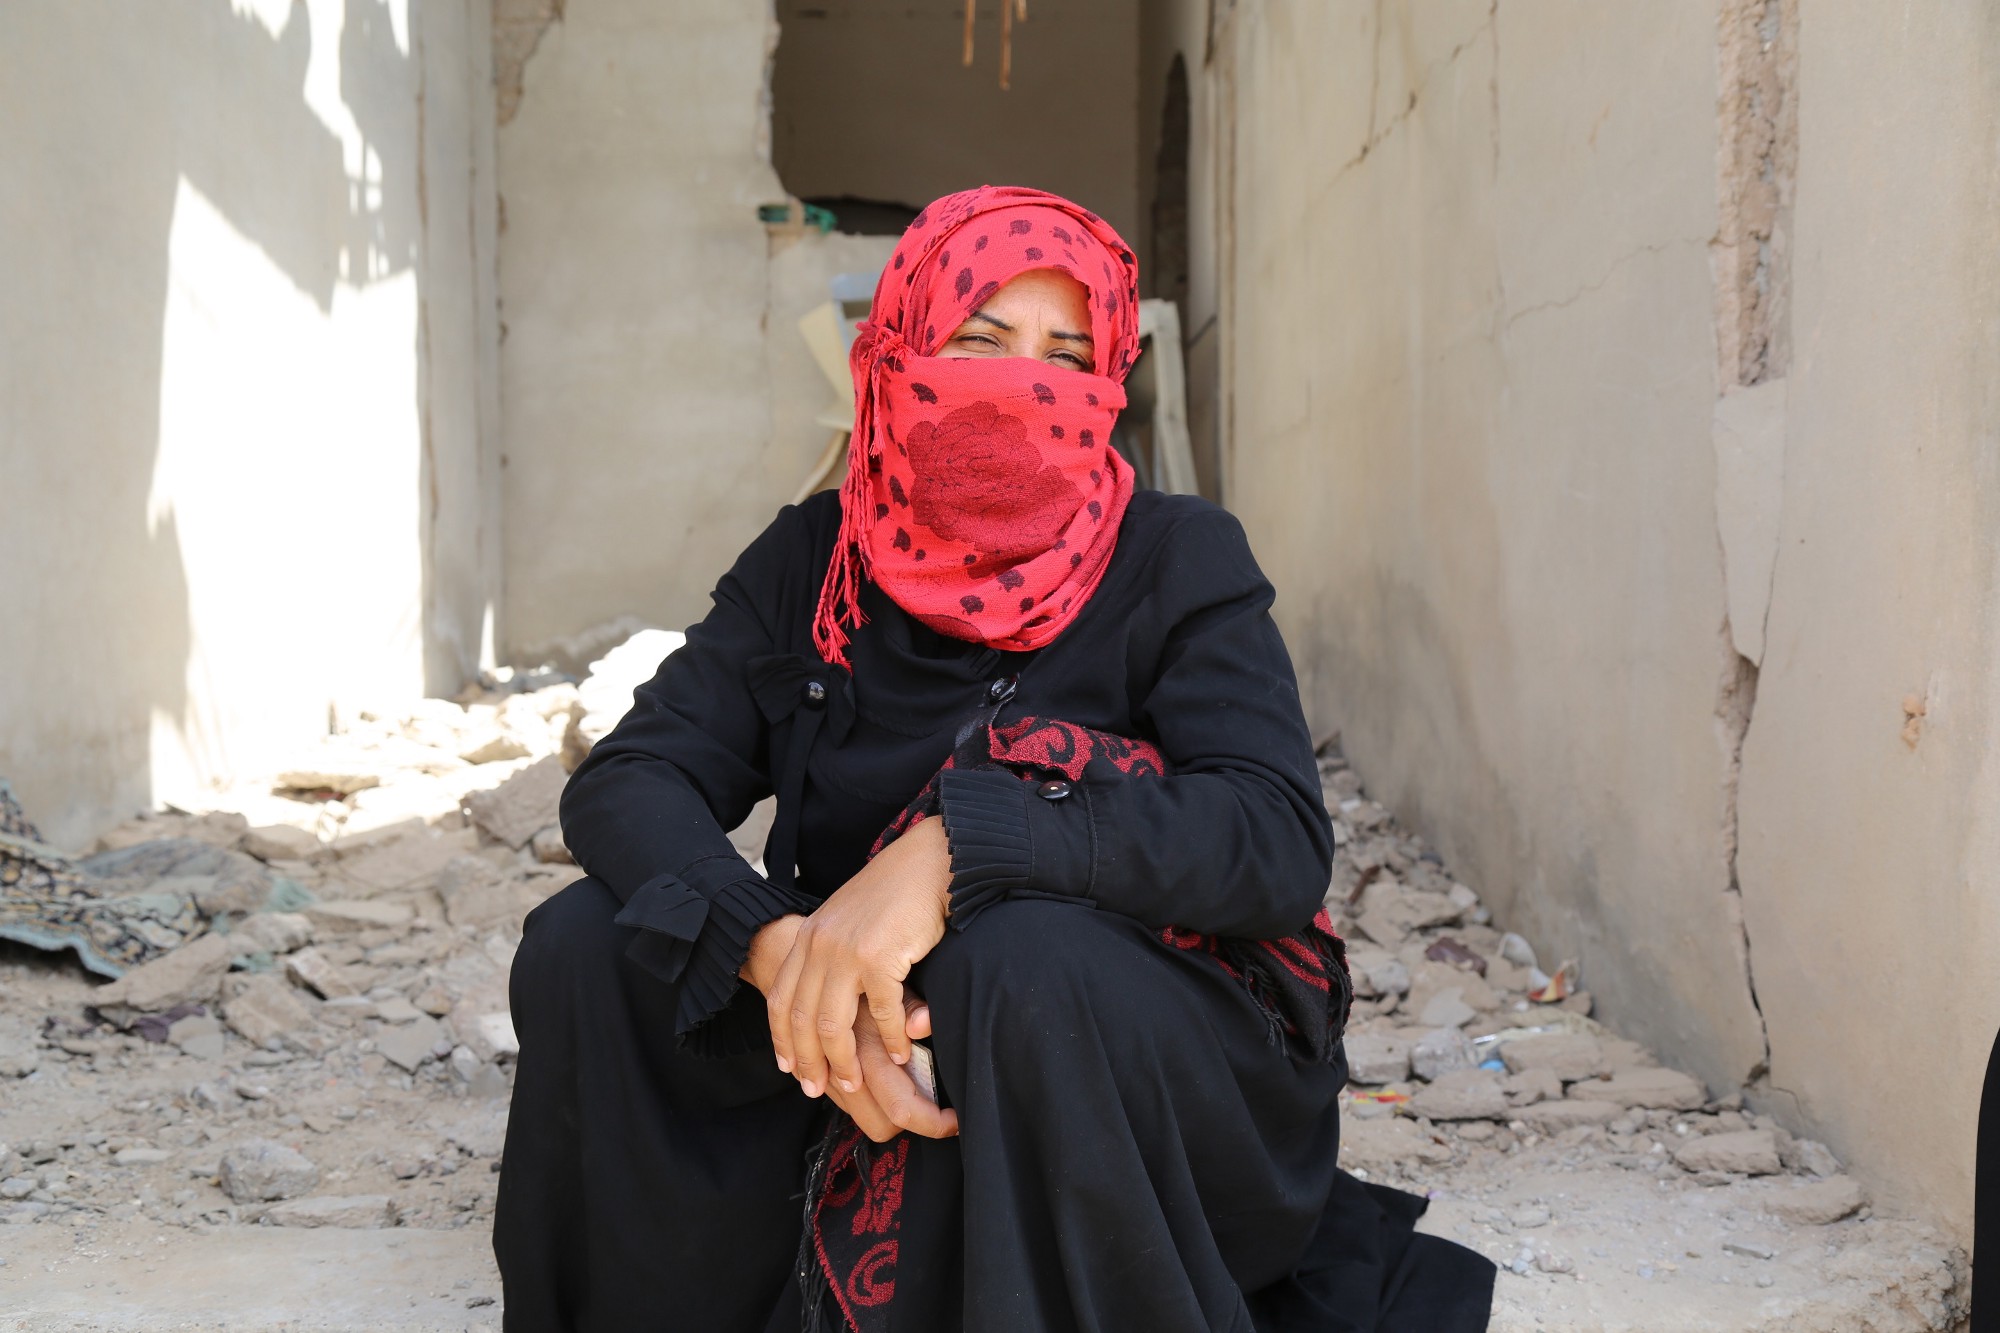 نجت أسرة رانيا من العيش تحت حصار داعش في دير الزور ولكنها حاليًا لا تملك مصدرًا للدخل. الصورة: برنامج الأغذية العالمي/جيسيكا لوسون